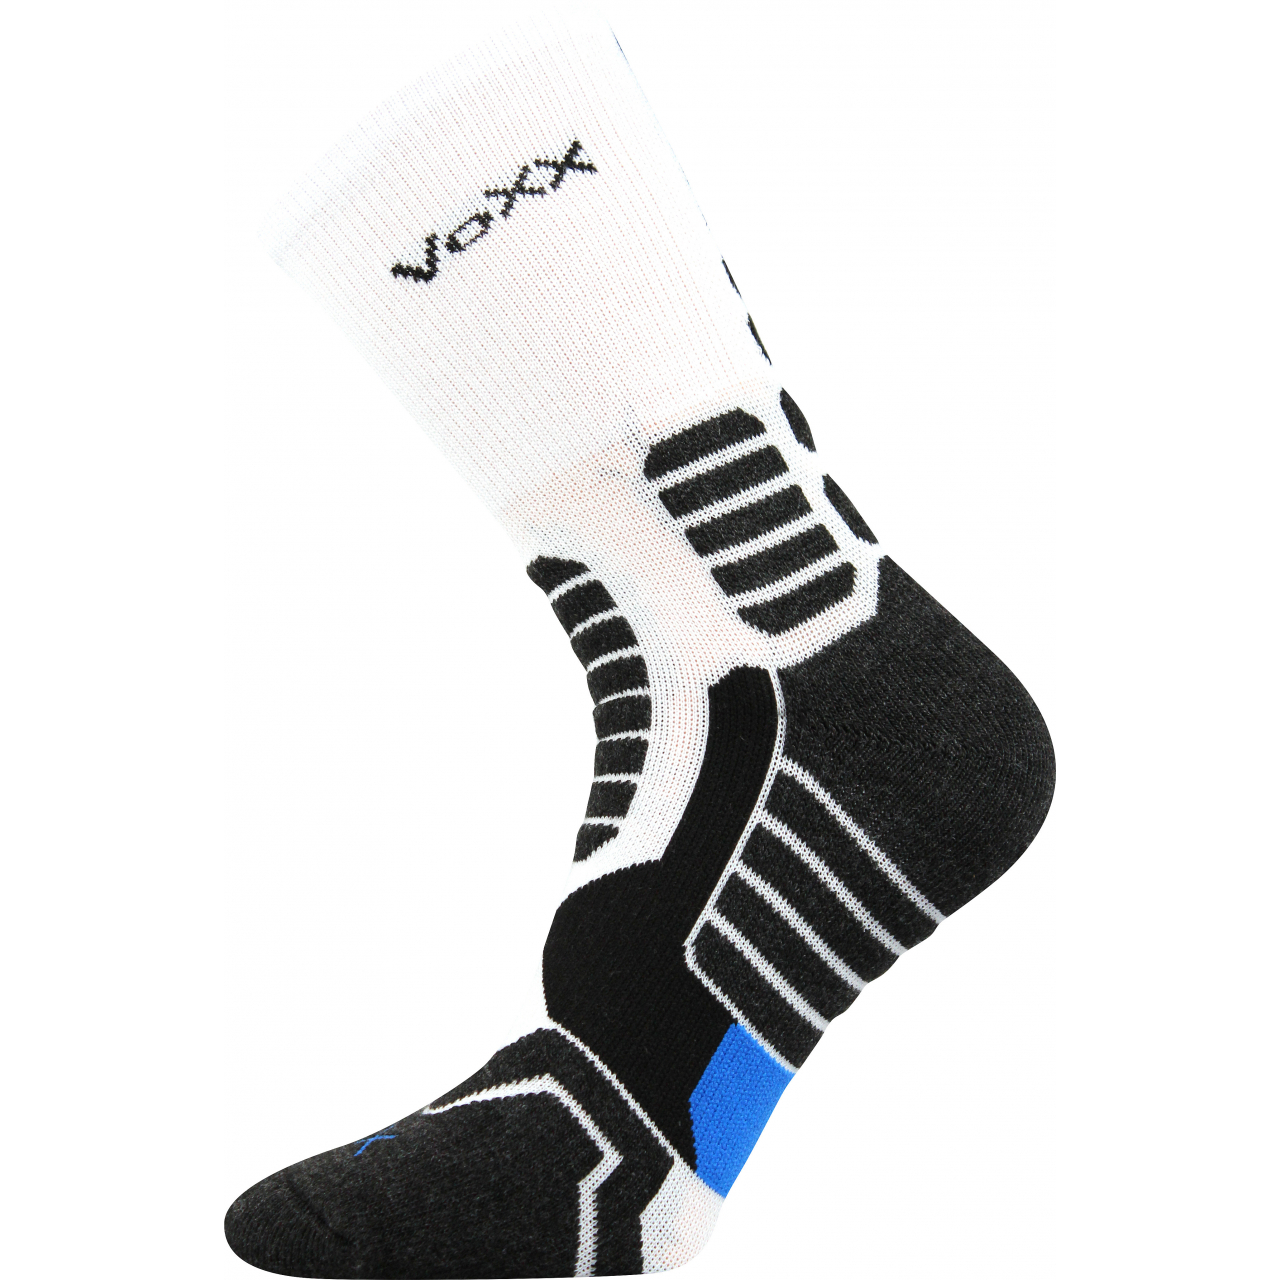 Ponožky kompresní unisex Voxx Ronin - bílé-černé, 39-42